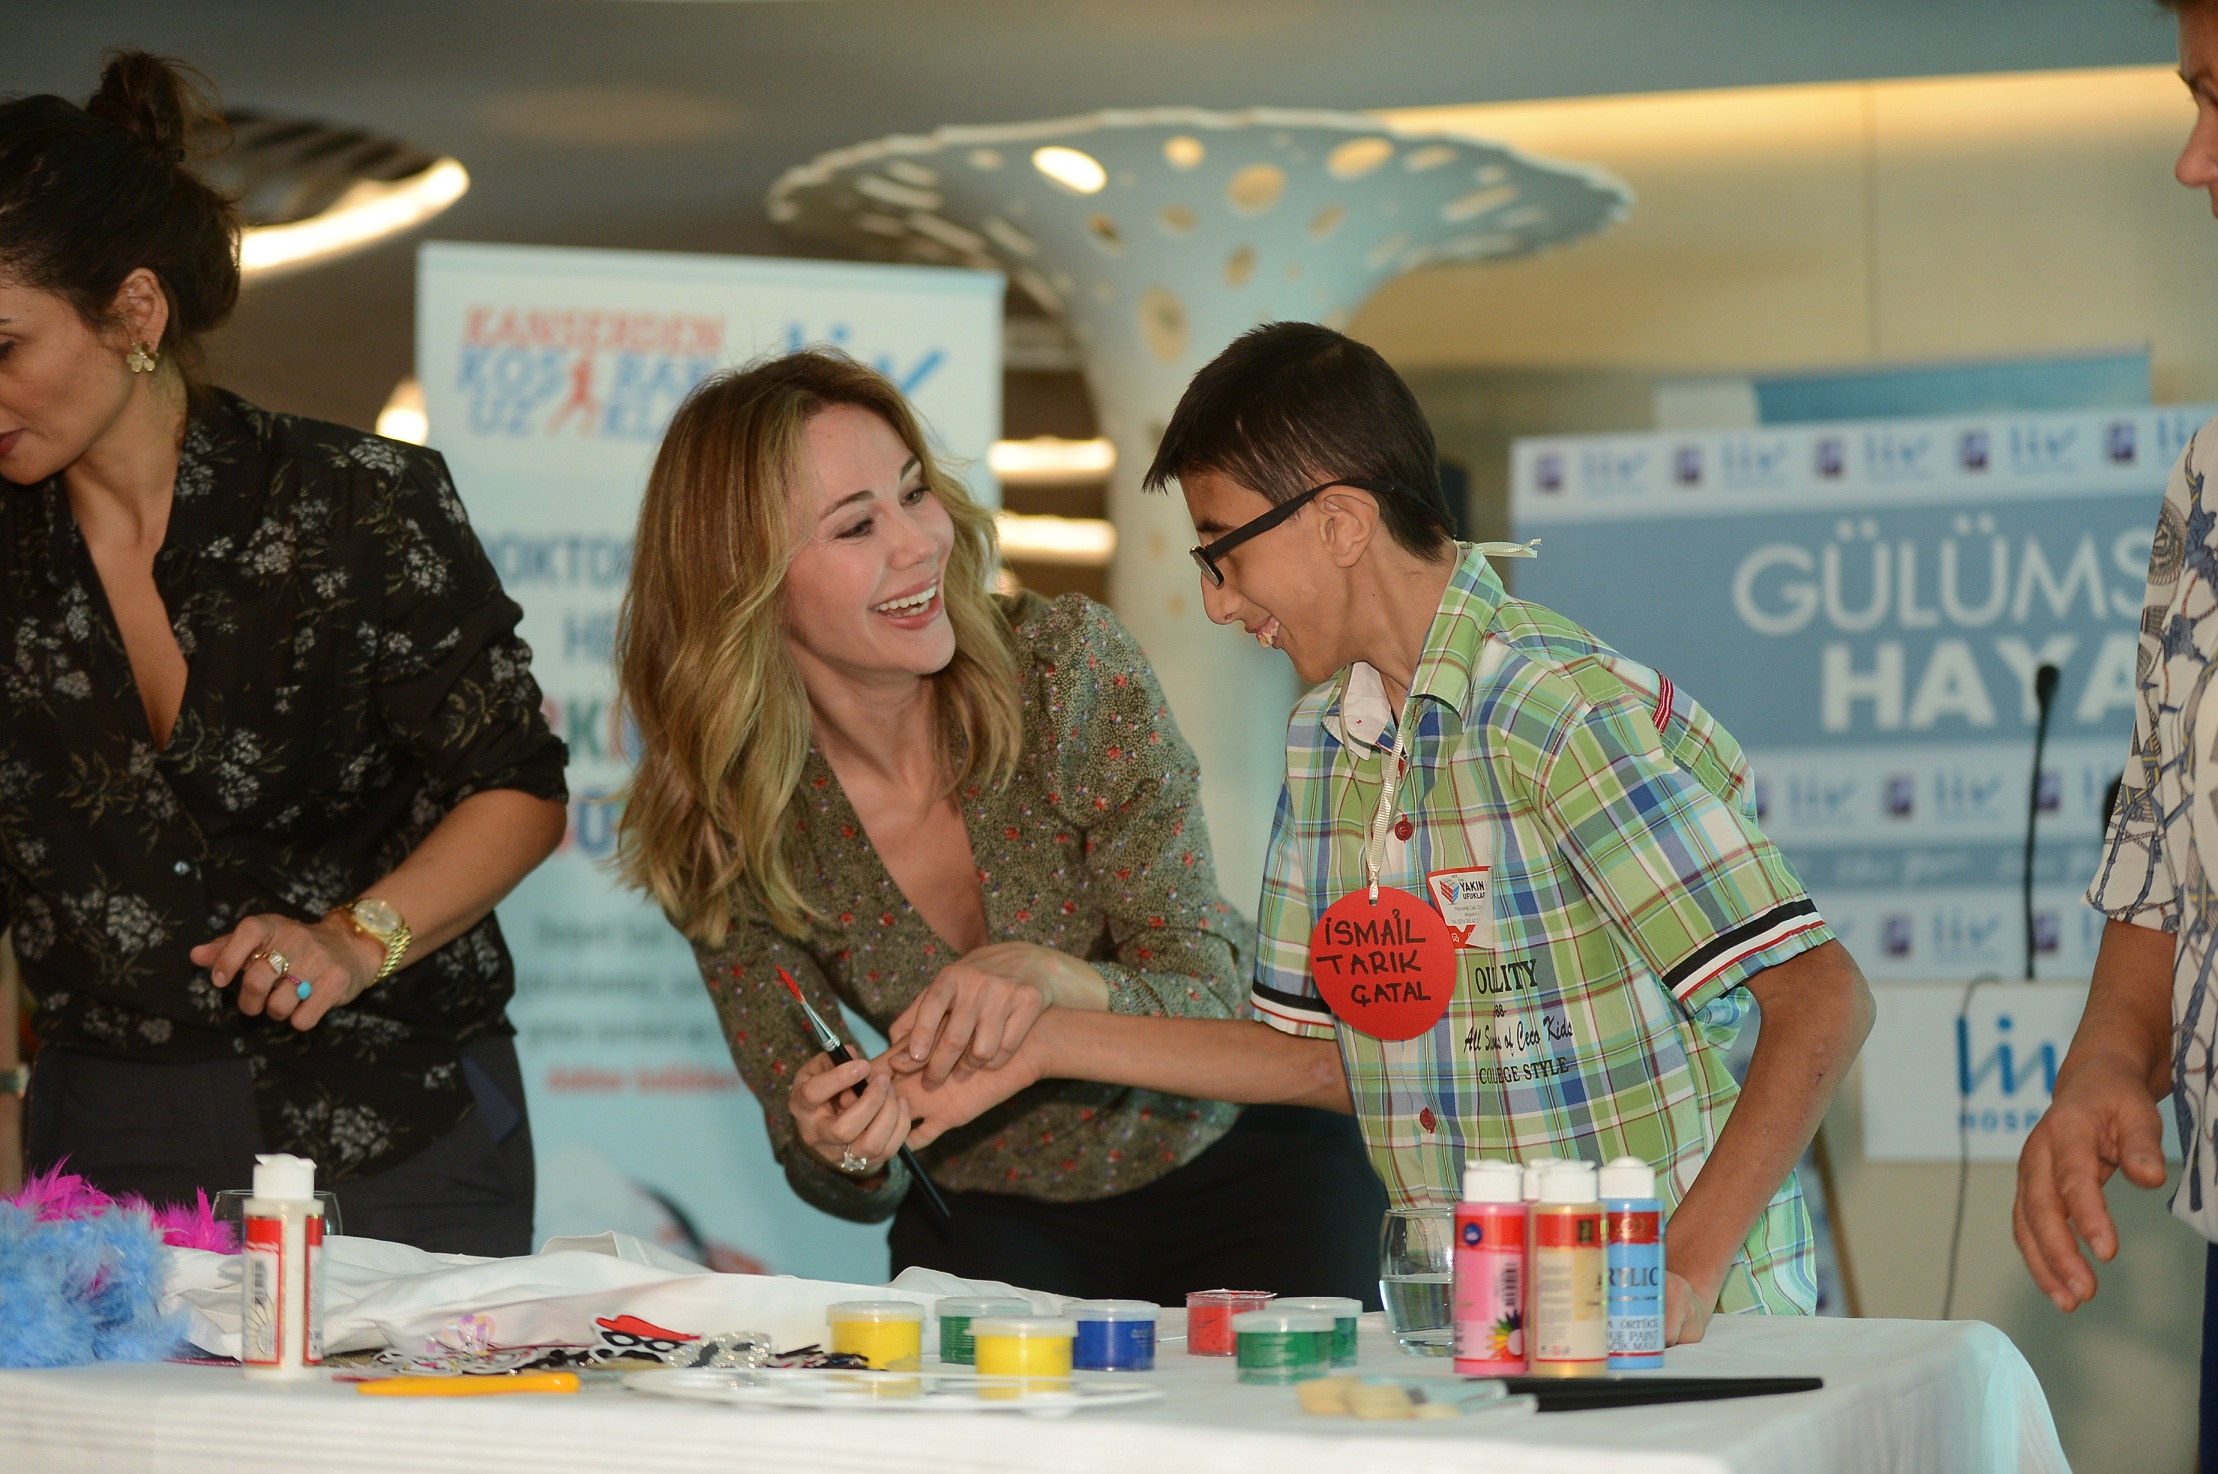 Ünlü sanatçı Ebru Yaşar ile görme engelli çocukların geleceği renkleniyor-2401